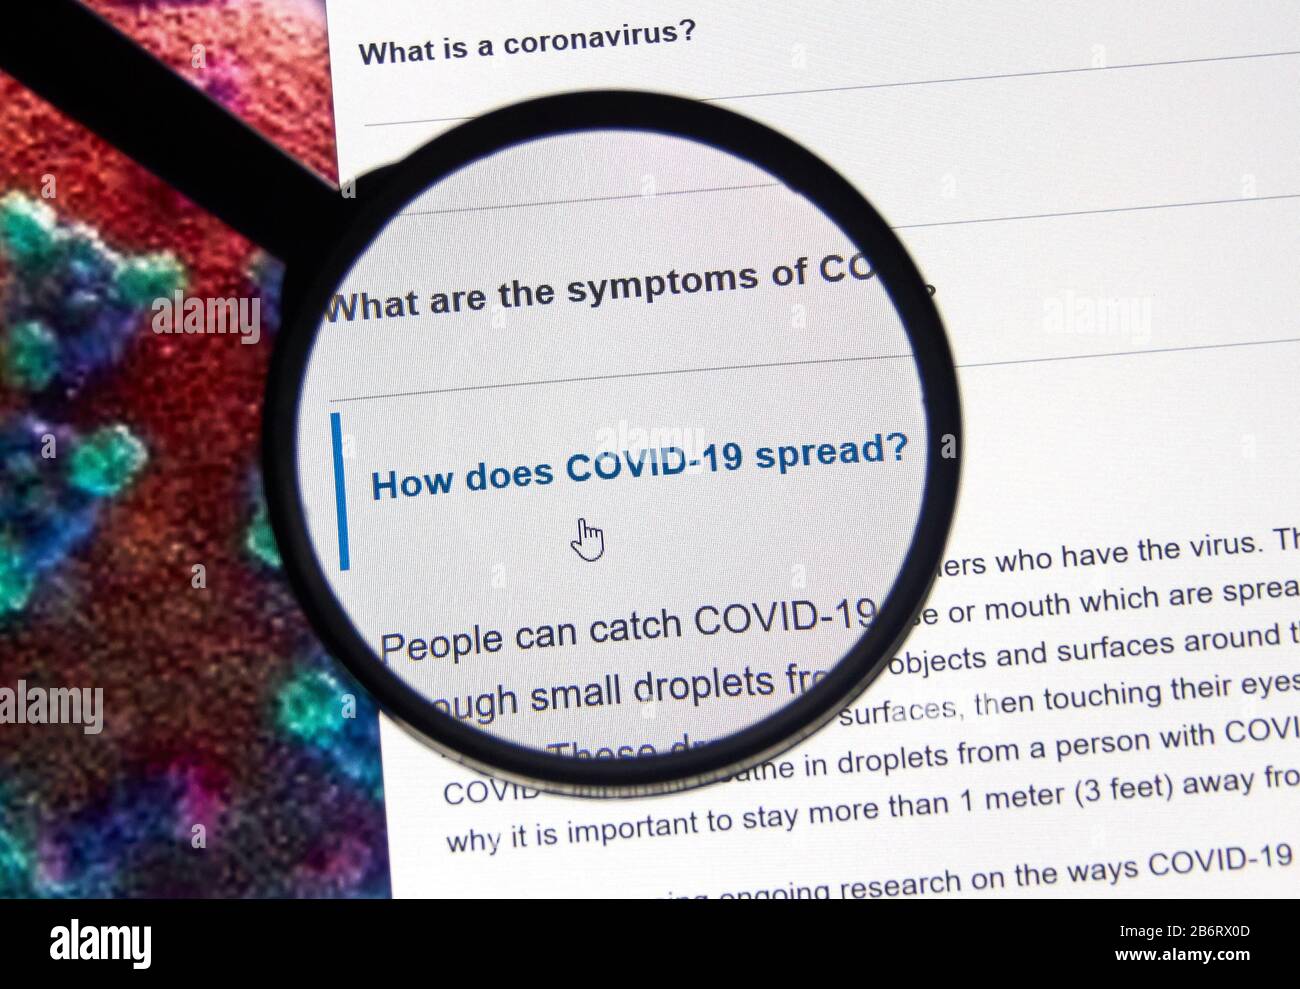 Montreal, Canada - 11 marzo 2020: Come fa COVID-19 a diffondere le domande. La coronavirus Disease 2019 COVID-19 è una malattia infettiva causata dalla grave acu Foto Stock